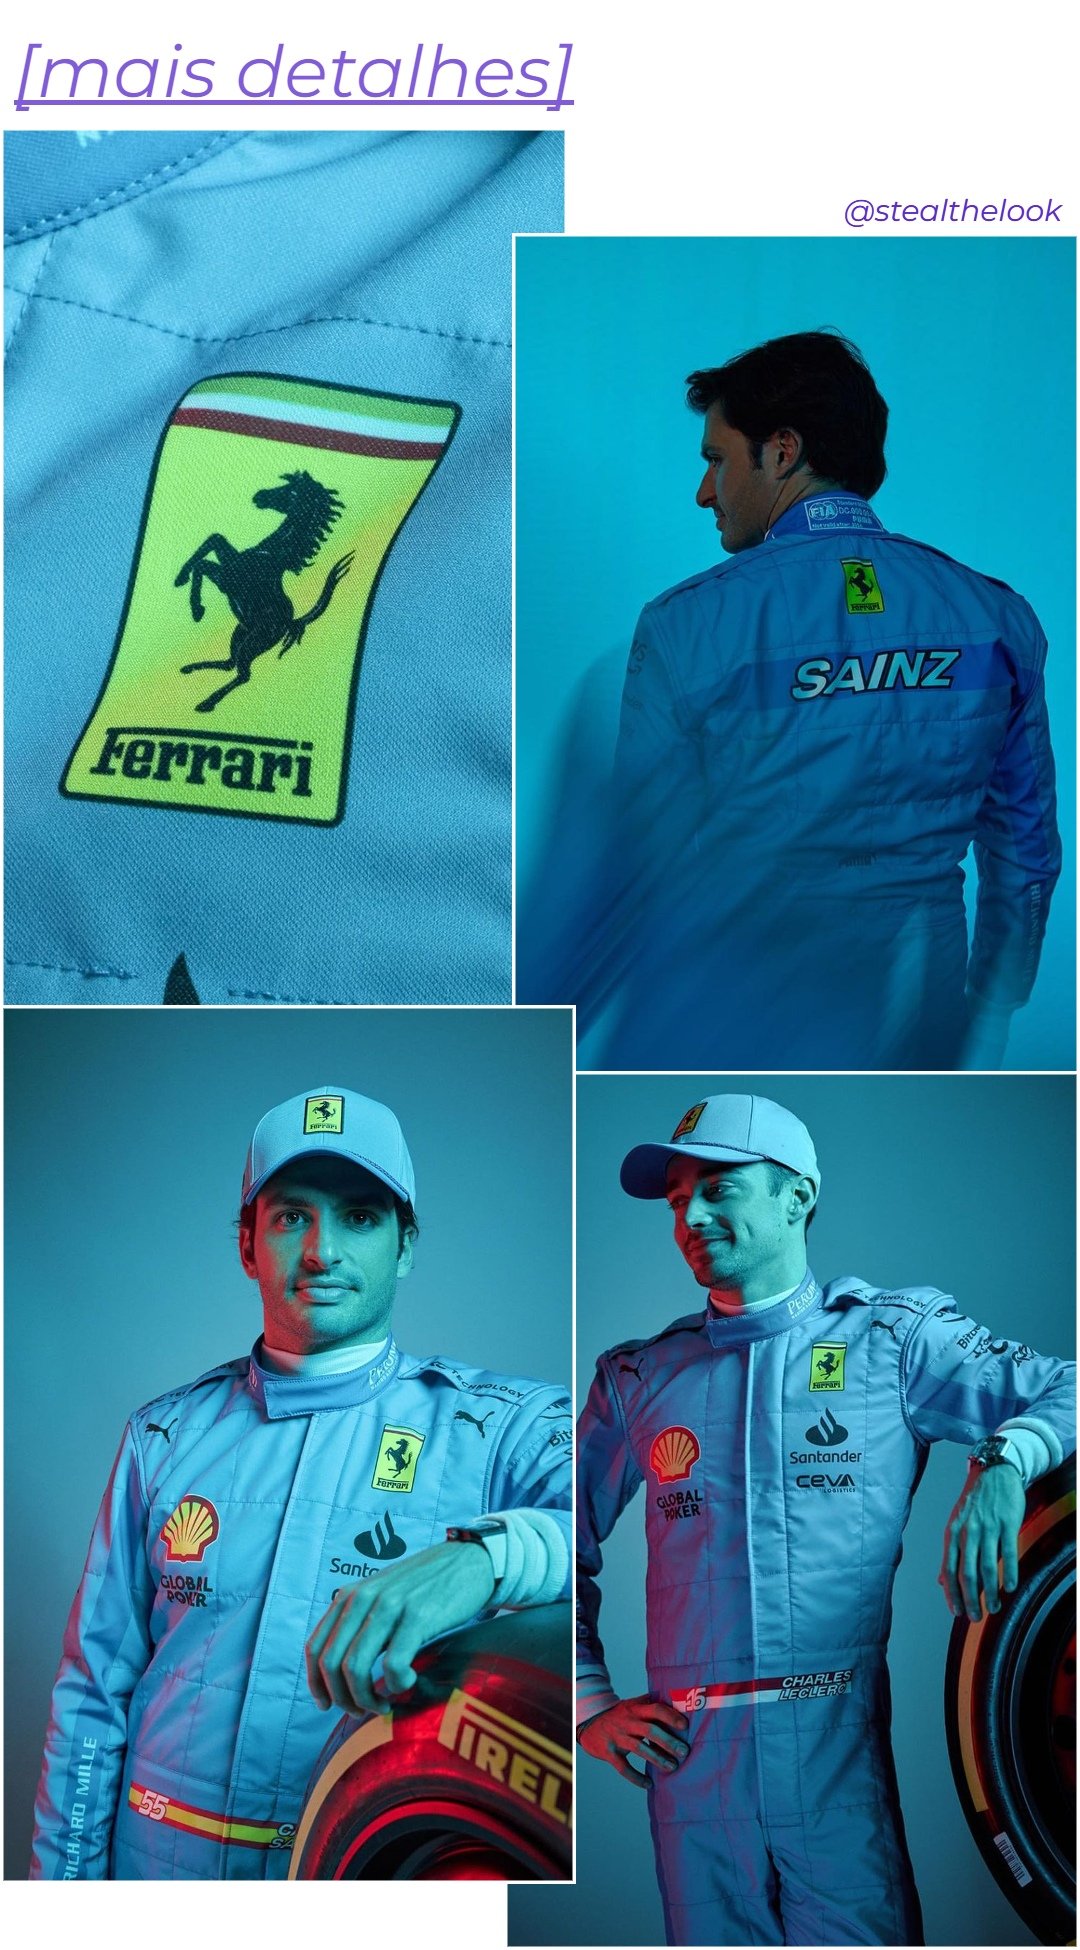 Charles Leclerc e Carlos Sainz - macacão azul de corrida - Ferrari Azul - outono - dois homens parados em pé em uma colagem com 4 fotos diferentes - https://stealthelook.com.br